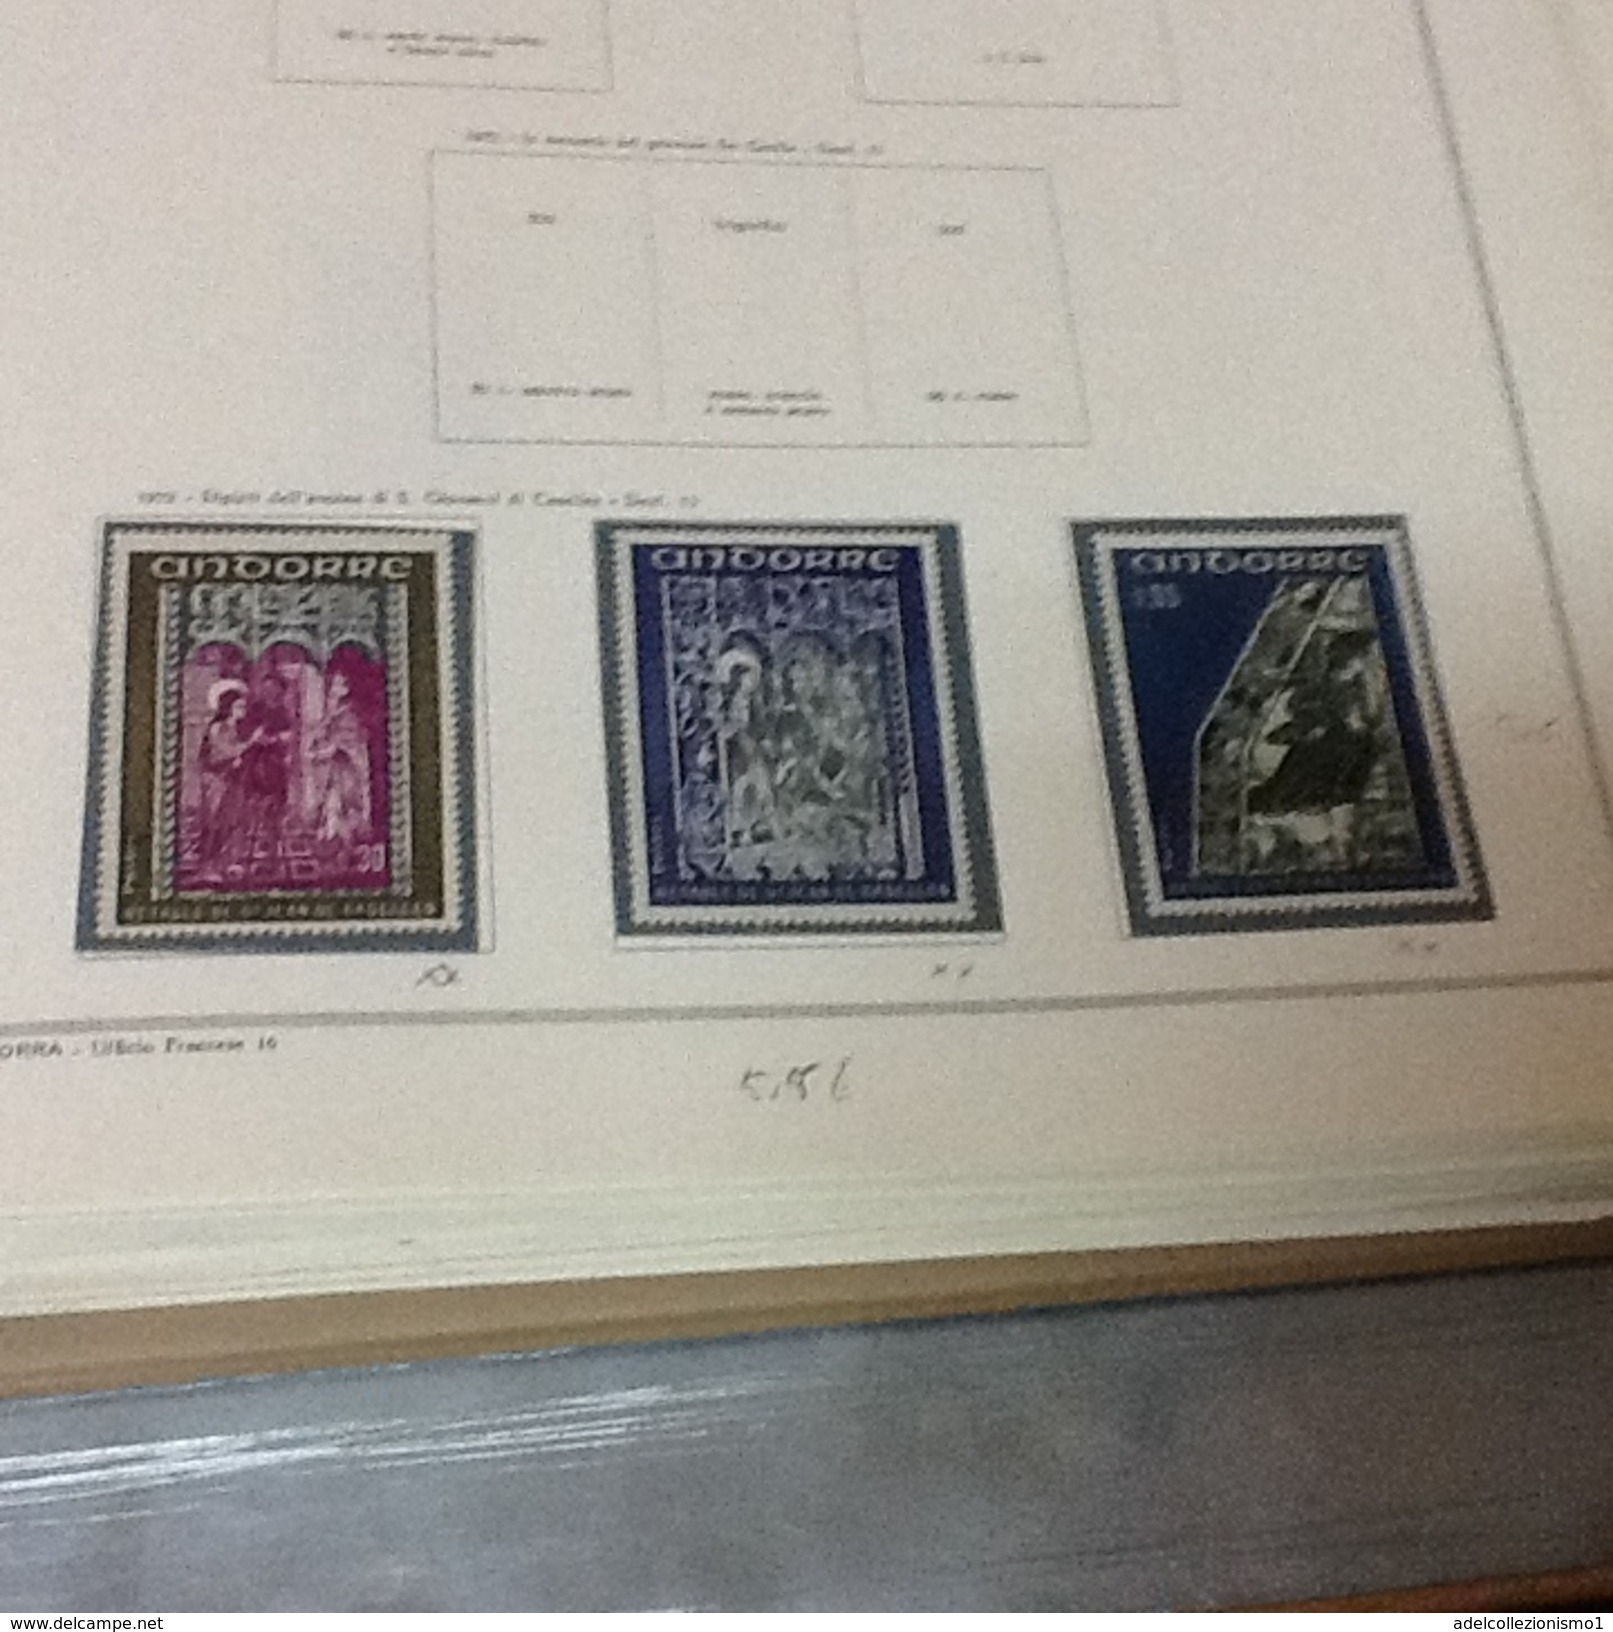 lotto 2) andorra francese francobolli nuovi e usati su pagine marini dal 1931 al 1977 cat 560 &euro; compresa aerea e se